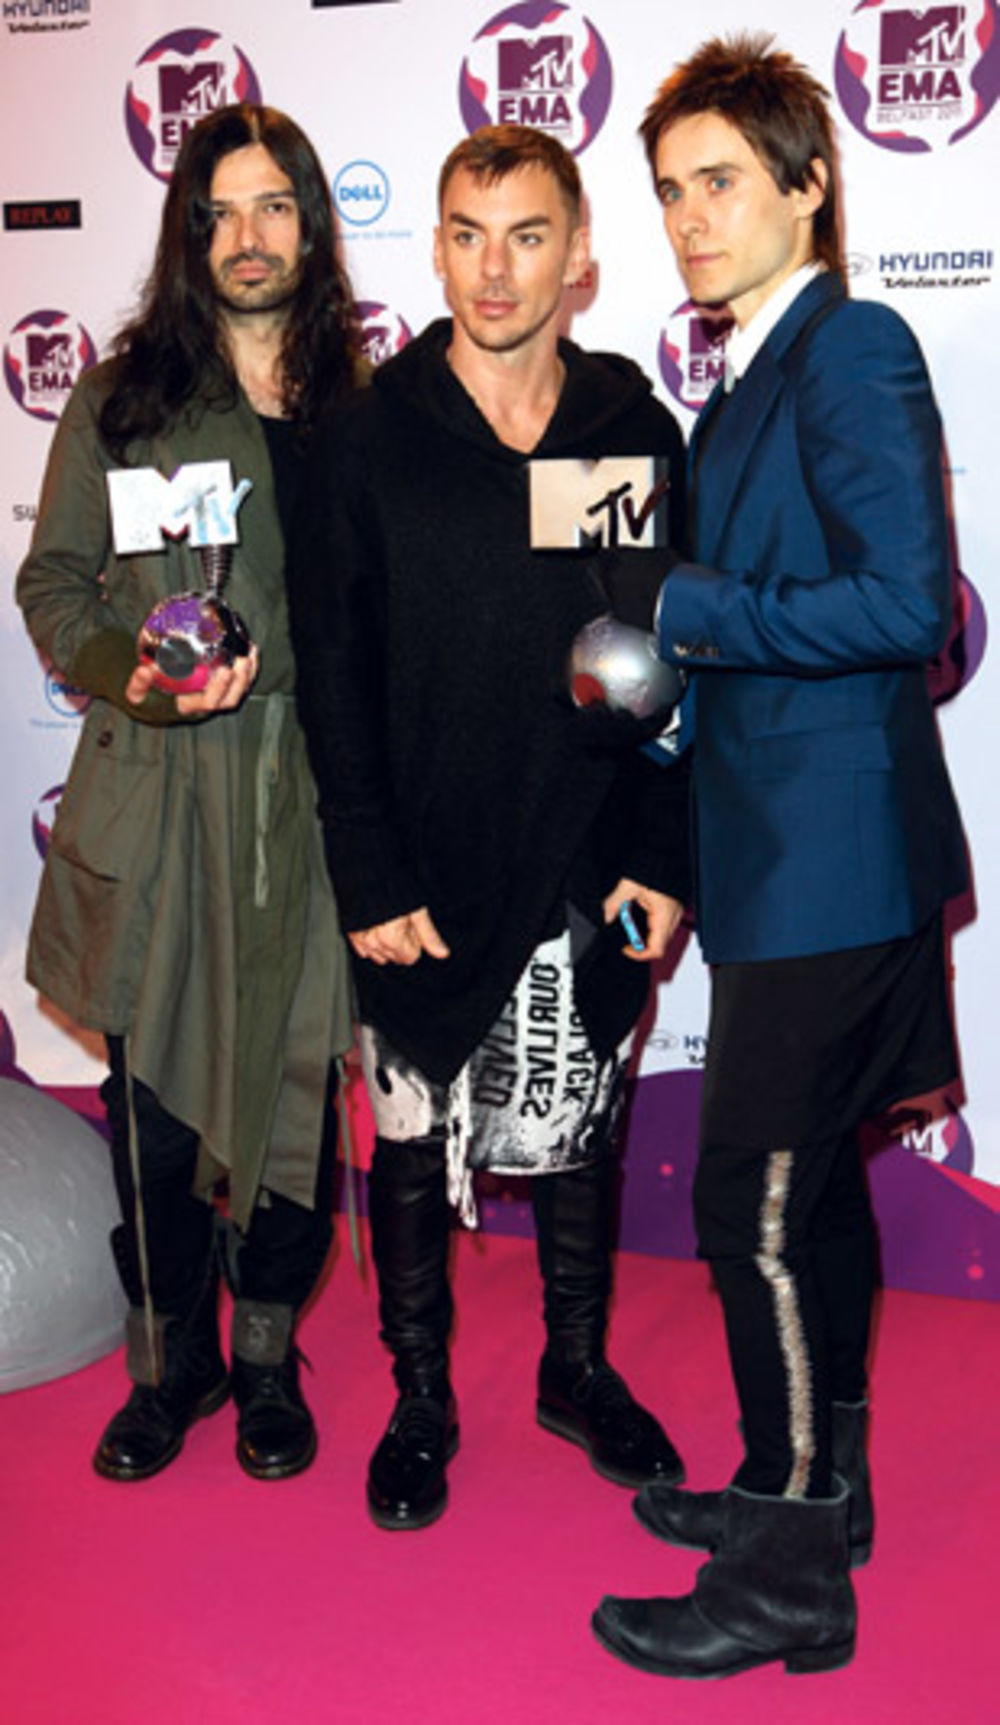 Evropsku dodelu MTV nagrada svetske zvezde učinile su dodatno unikatnom jer su domišljato spajale nespojive krojeve, boje i materijale plasirajući novi i odvažniji trend